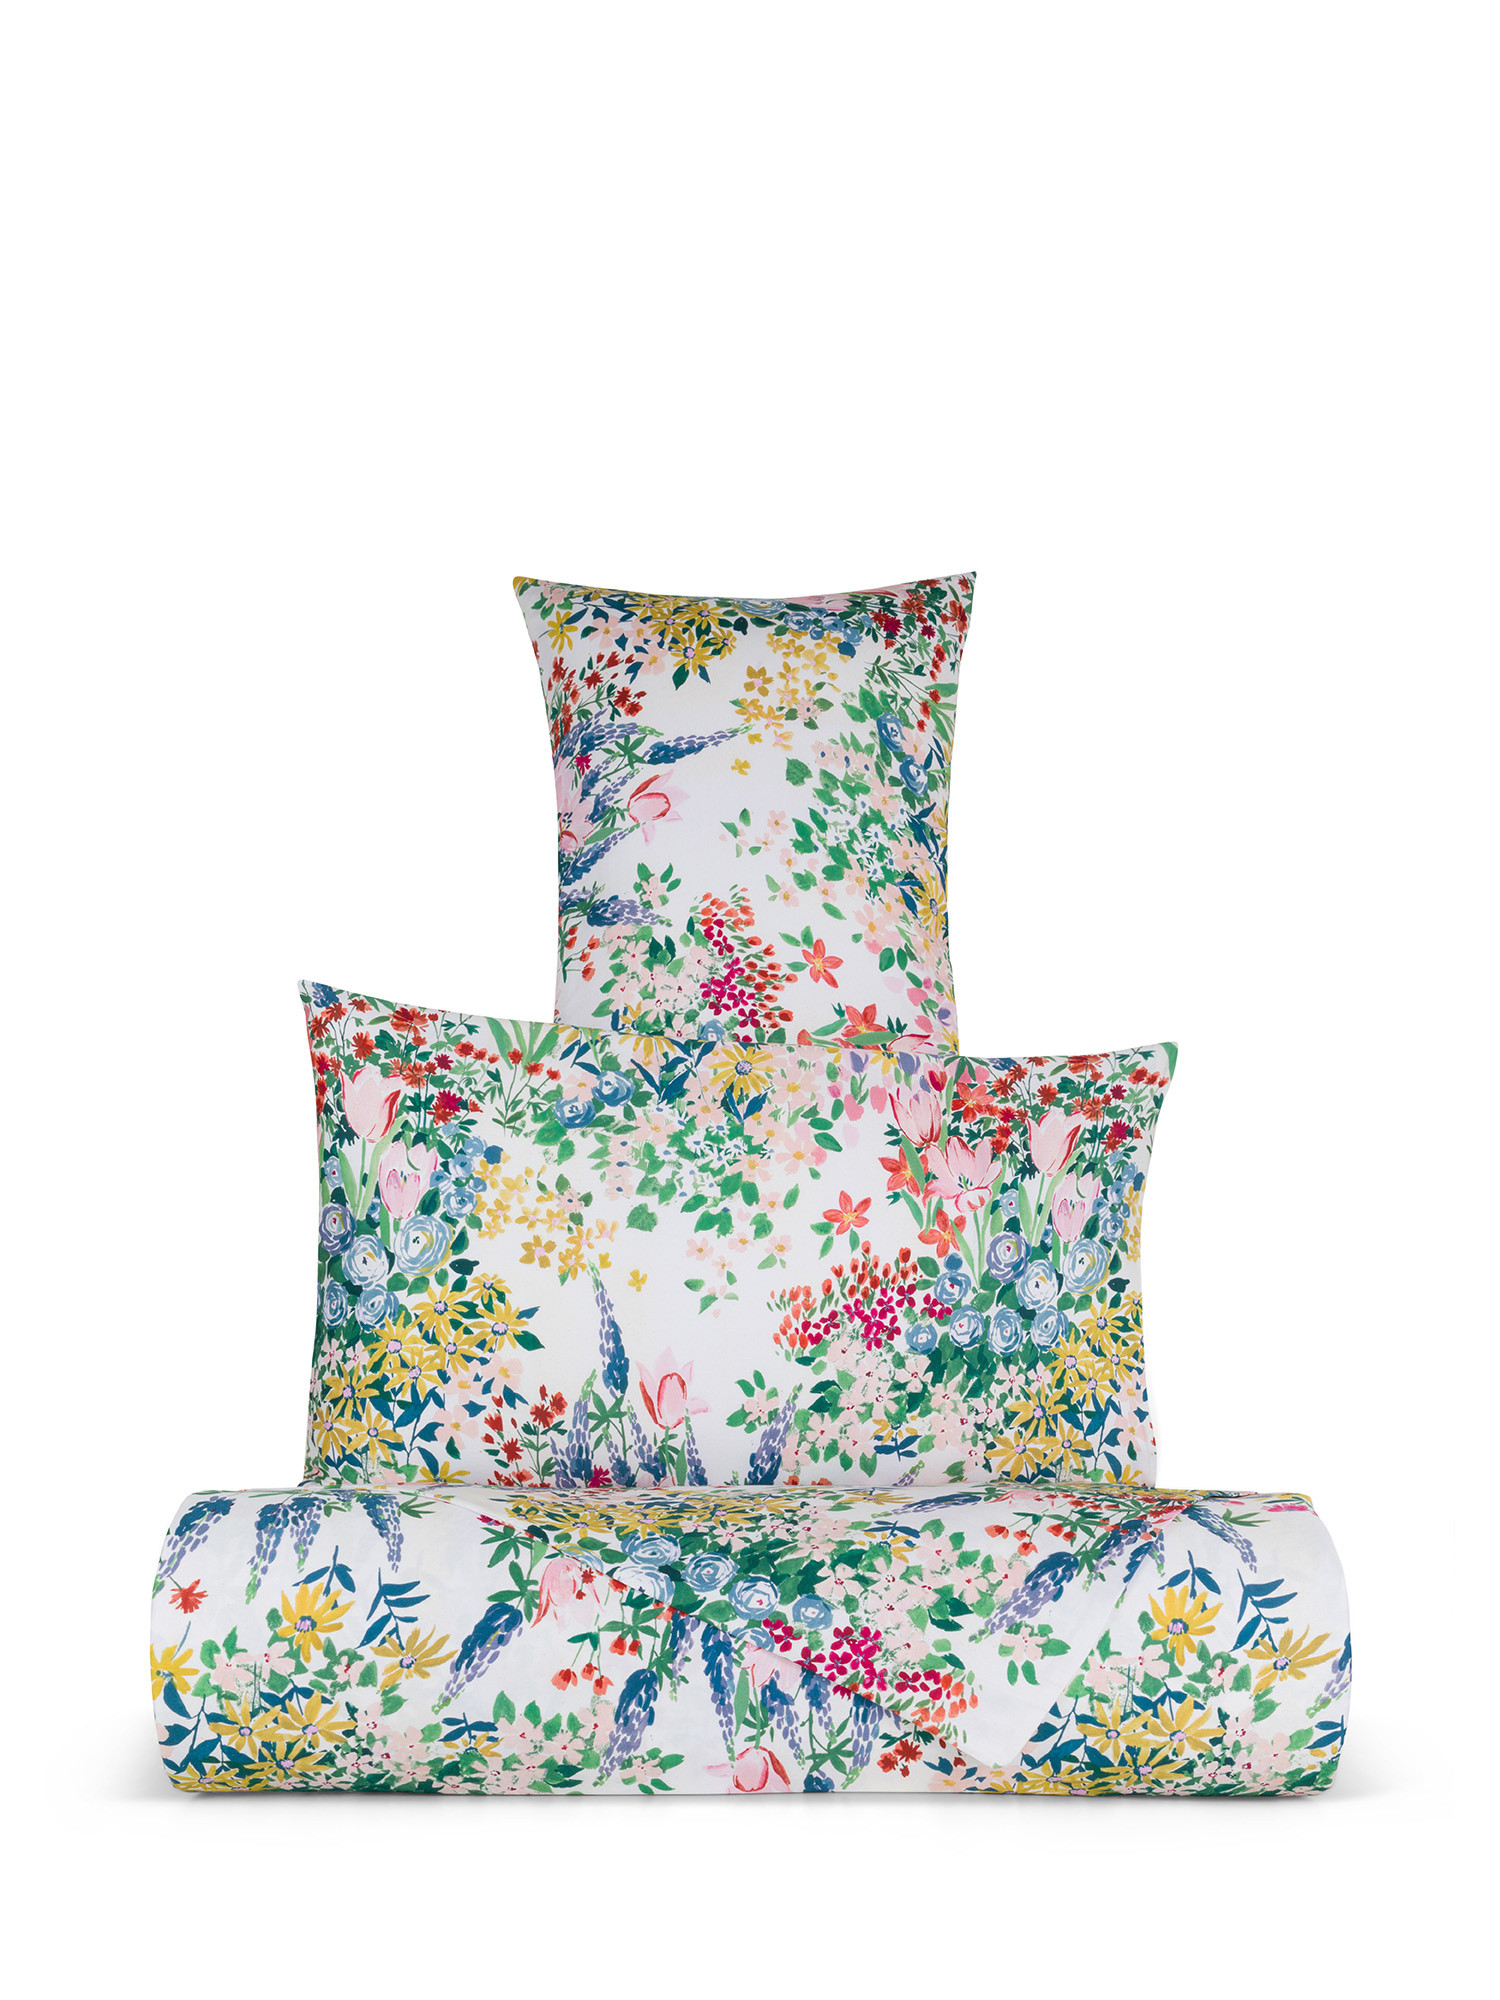 Floral patterned cotton satin sheet set, Multicolor, large image number 0